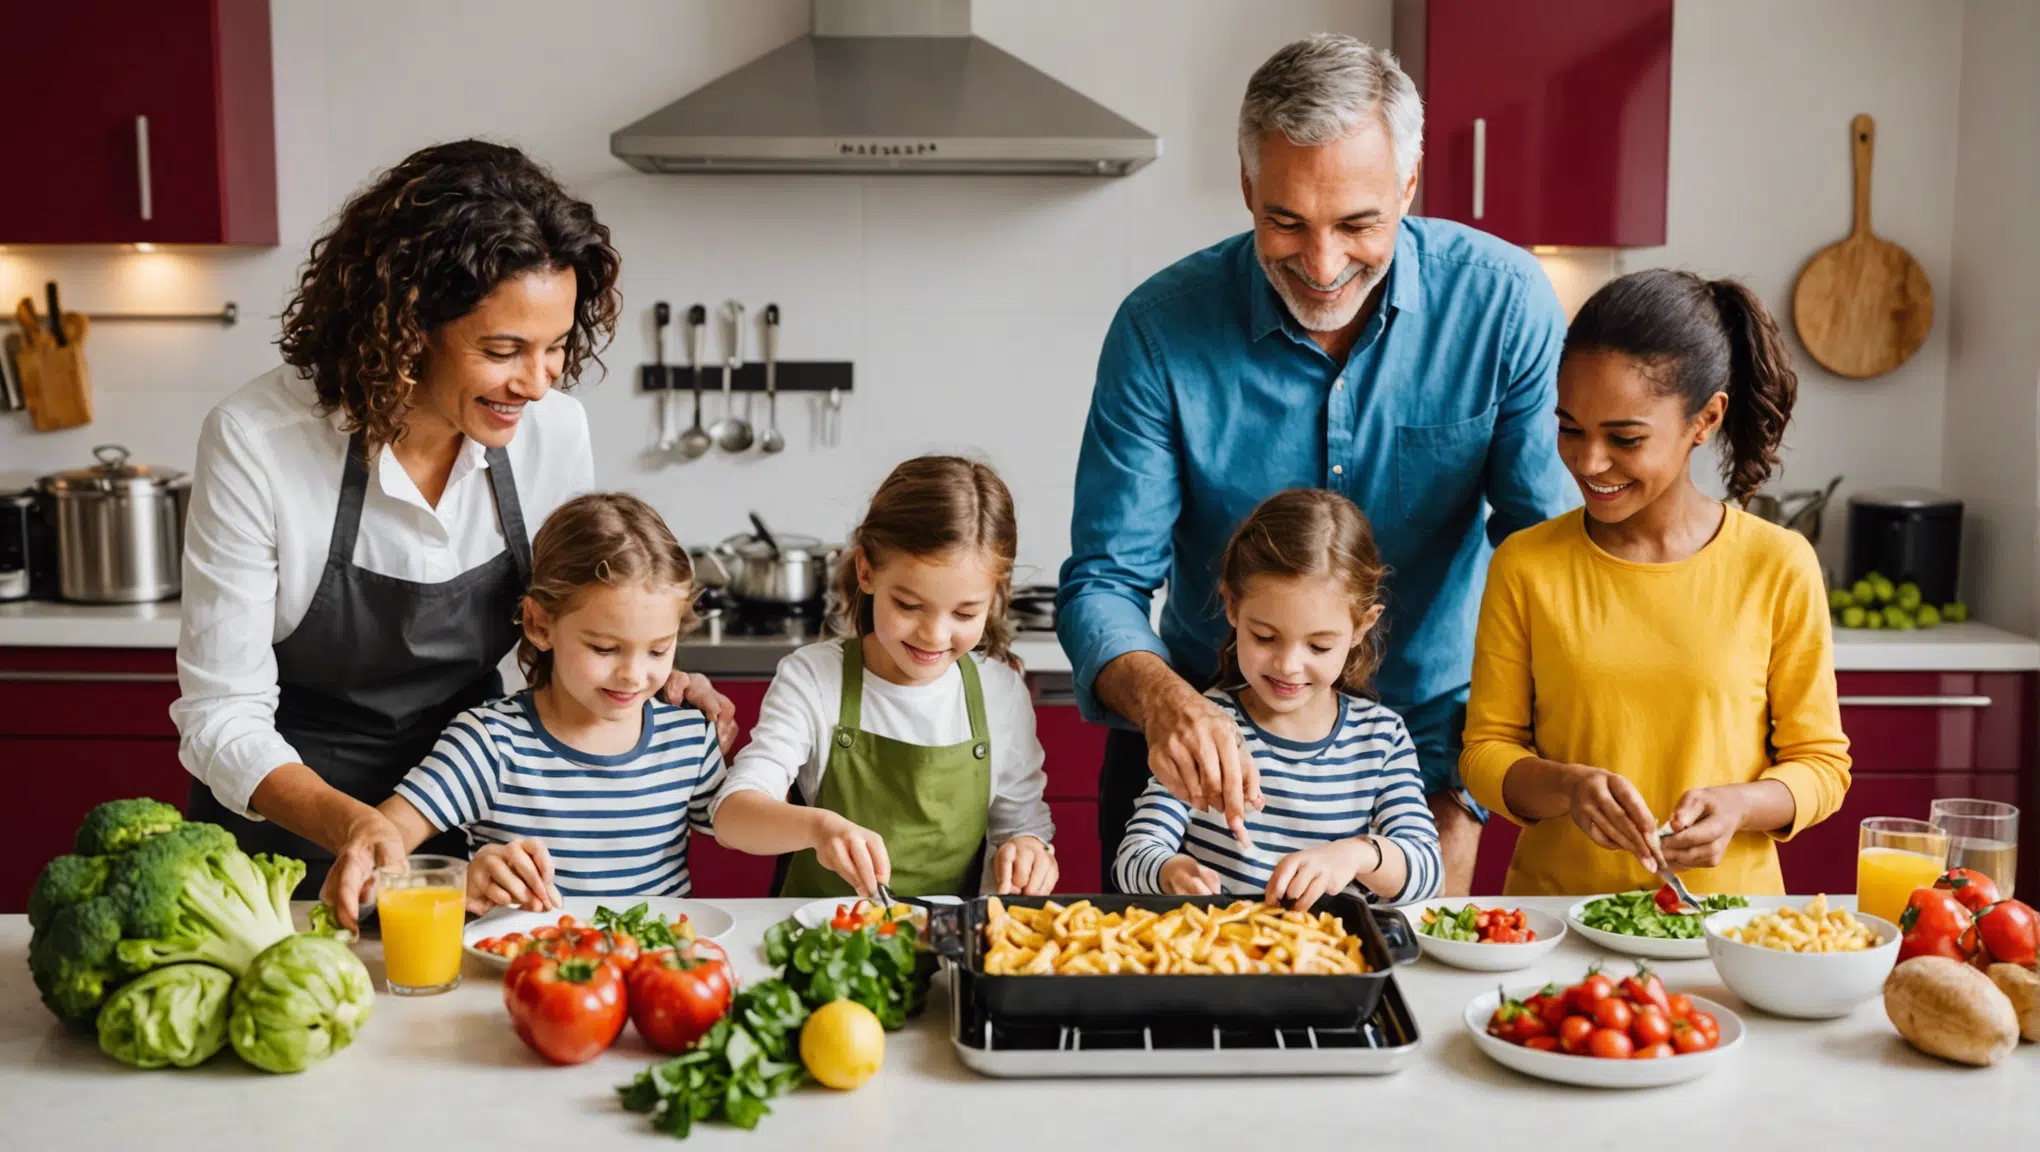 découvrez des idées d'activités culinaires divertissantes pour les familles et partagez des moments de complicité en cuisine avec vos proches.